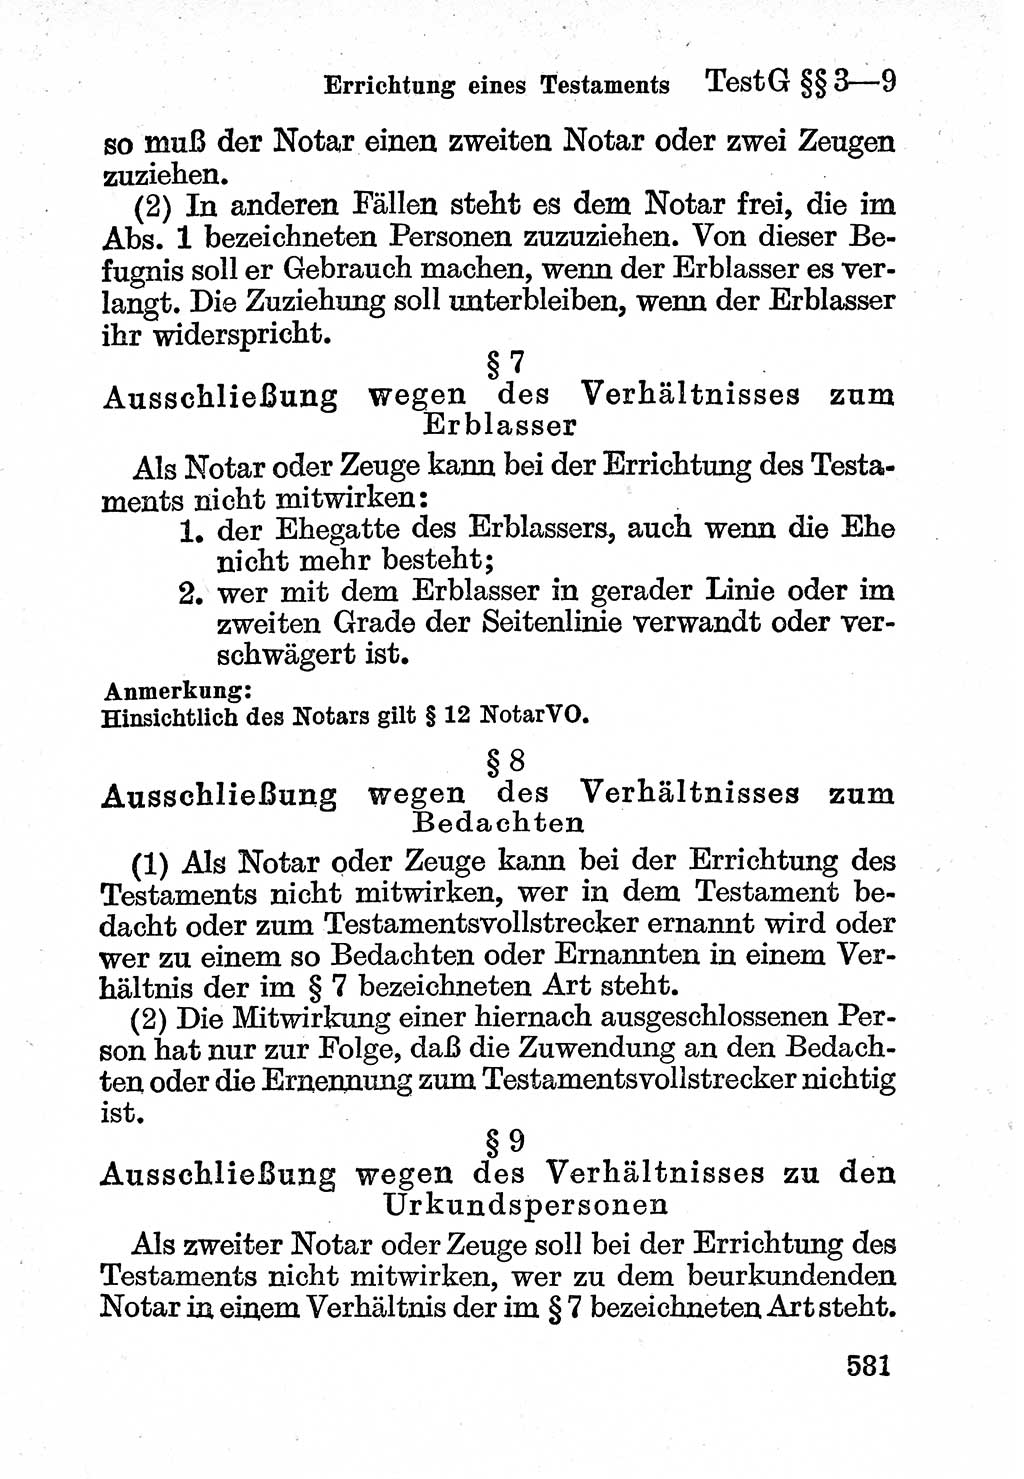 Bürgerliches Gesetzbuch (BGB) nebst wichtigen Nebengesetzen [Deutsche Demokratische Republik (DDR)] 1956, Seite 581 (BGB Nebenges. DDR 1956, S. 581)